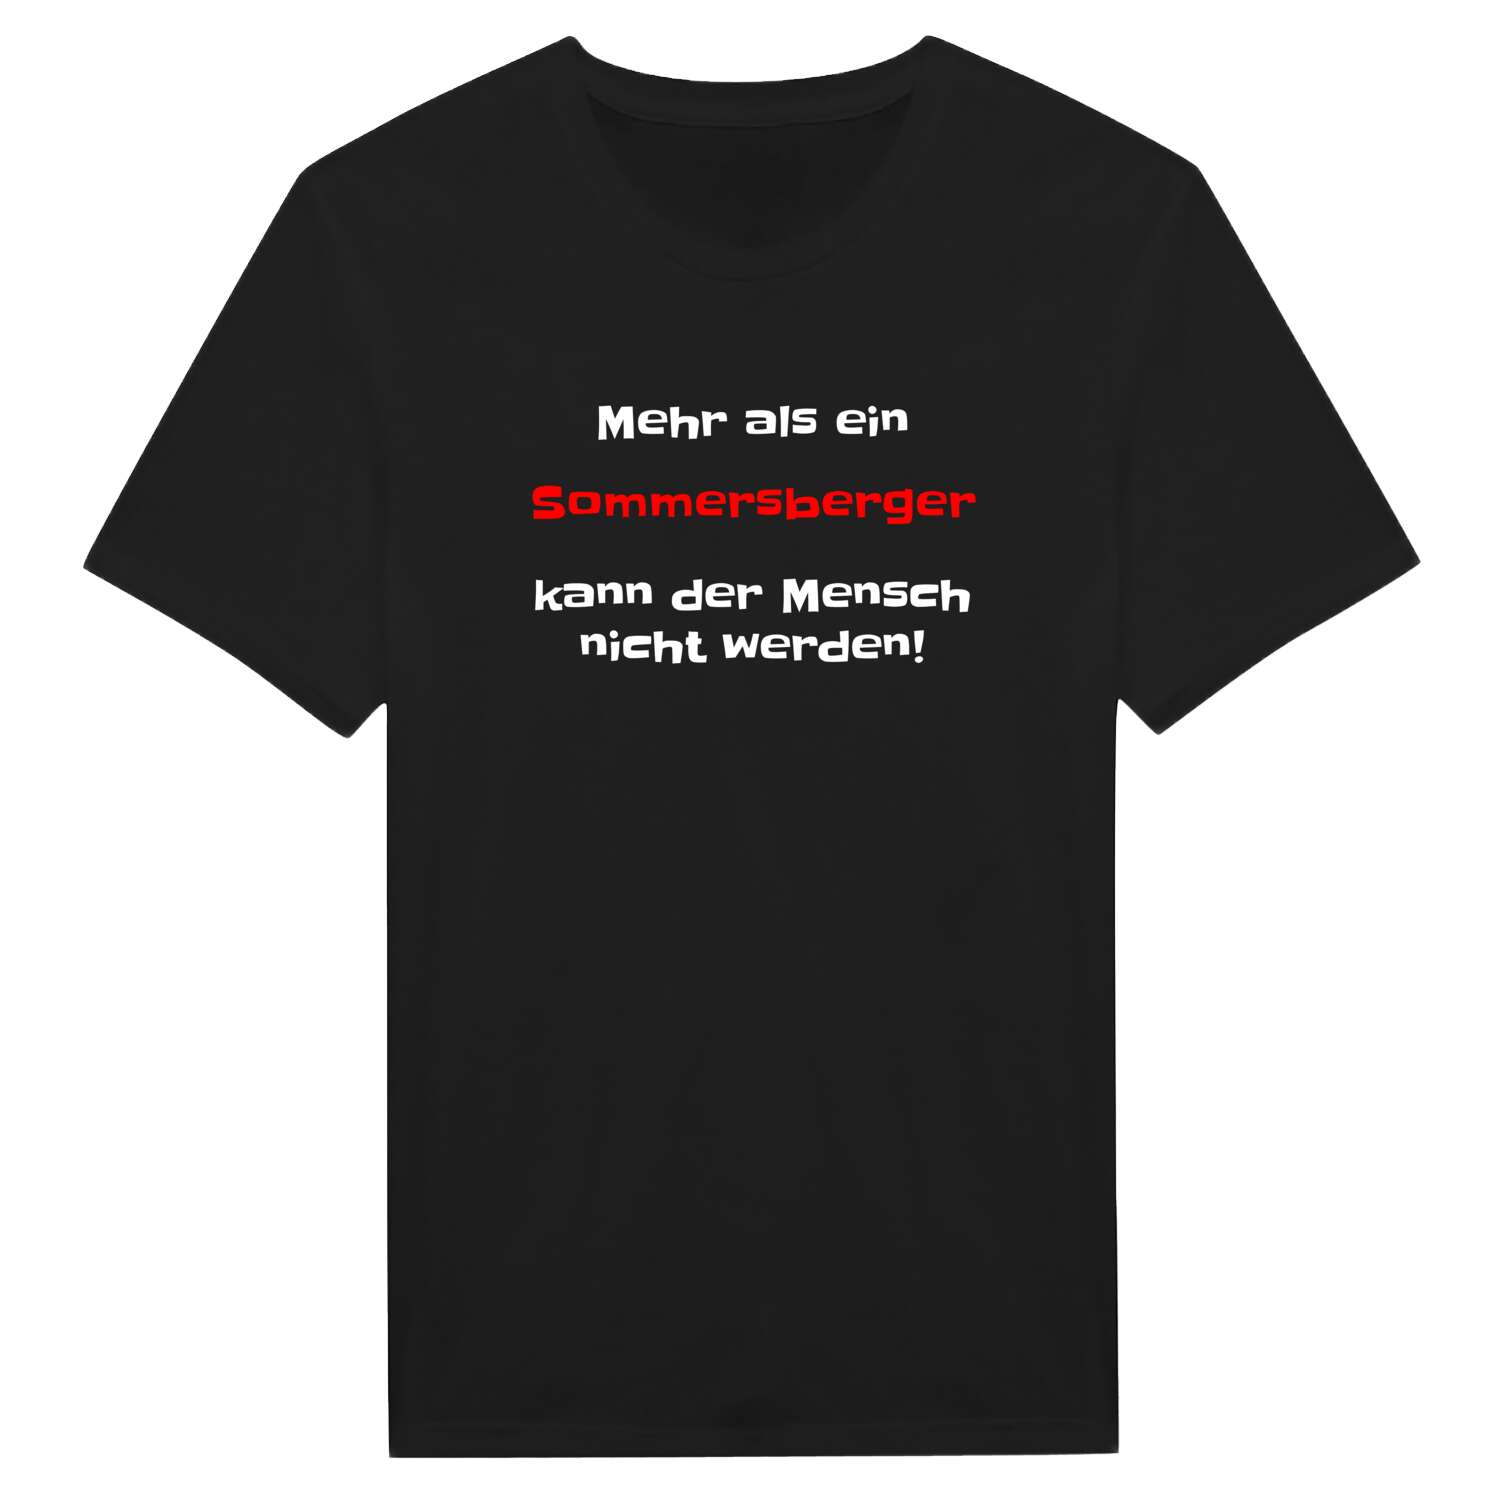 Sommersberg T-Shirt »Mehr als ein«